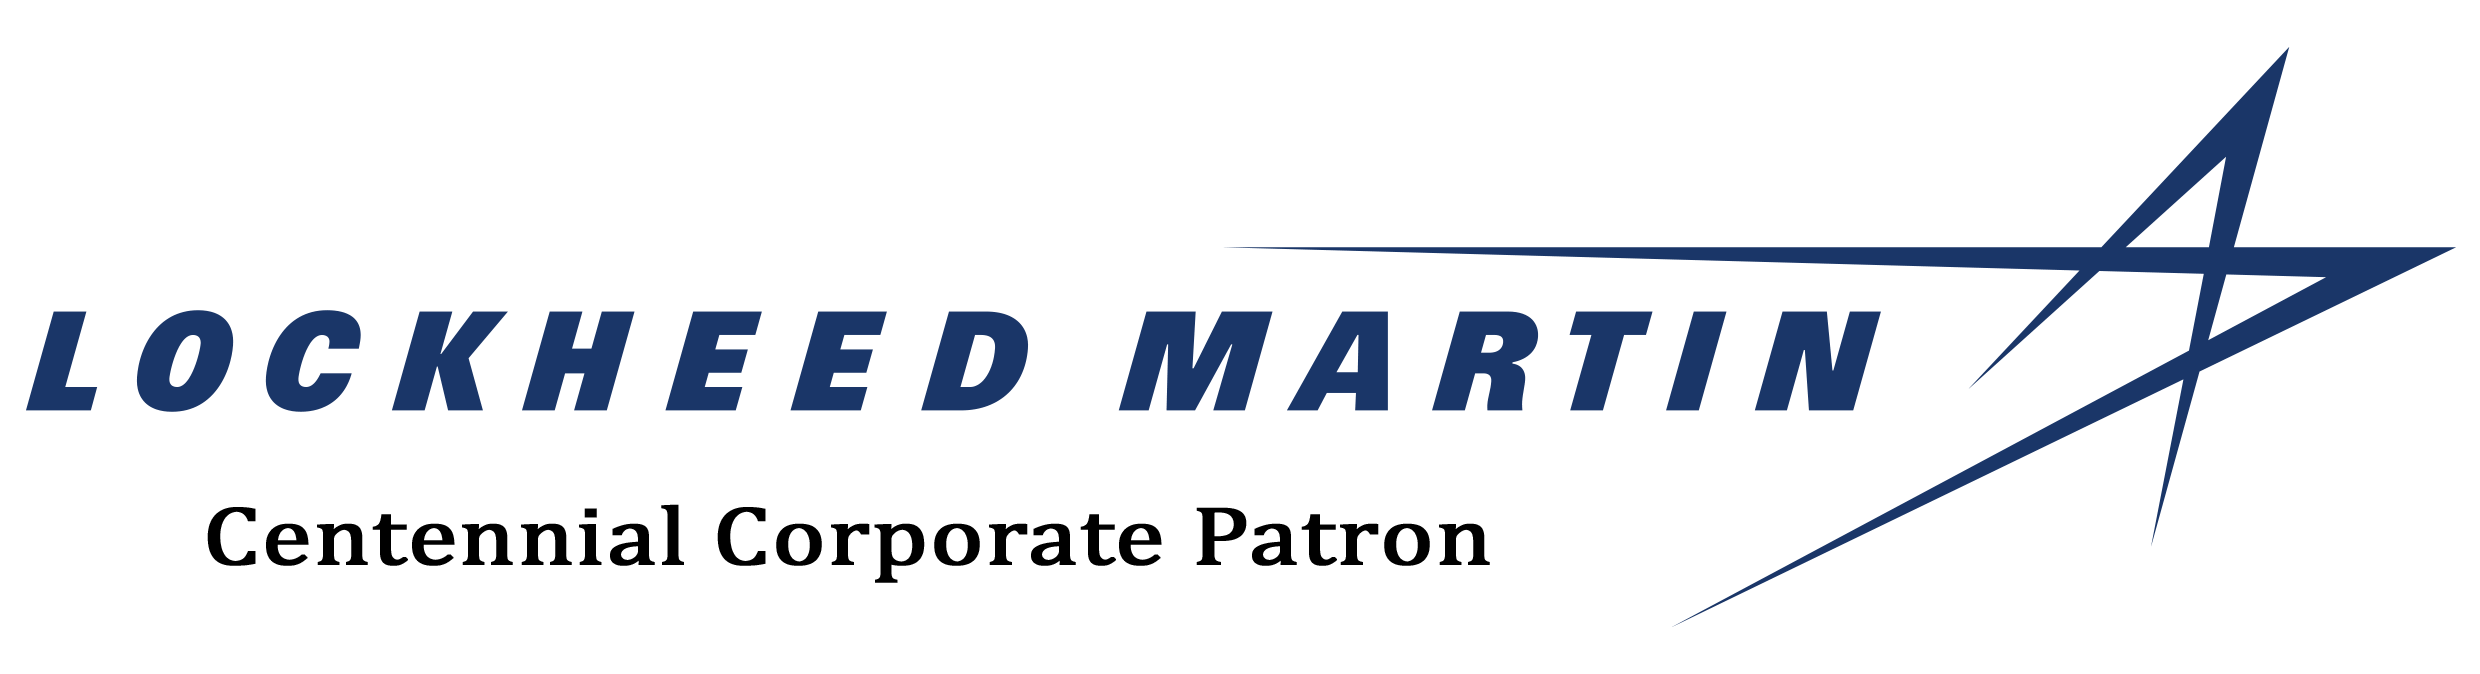 LockHeed Martin Logo